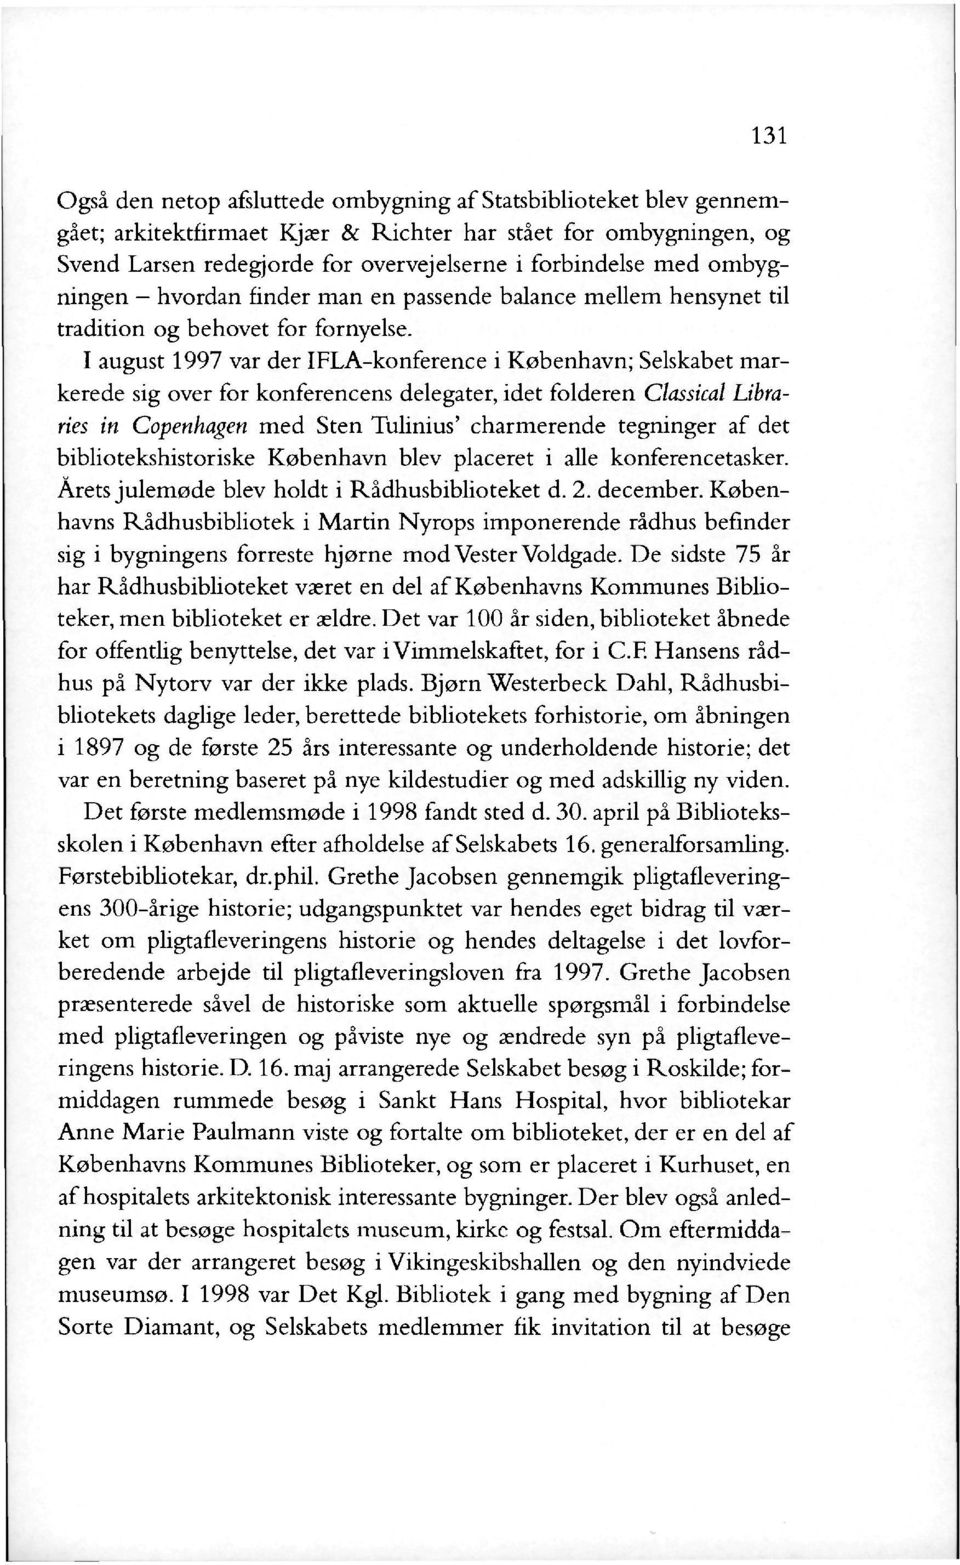 I august 1997 var der IFLA-konference i København; Selskabet markerede sig over for konferencens delegater, idet folderen Classical Libraries in Copenhagen med Sten Tulinius' charmerende tegninger af